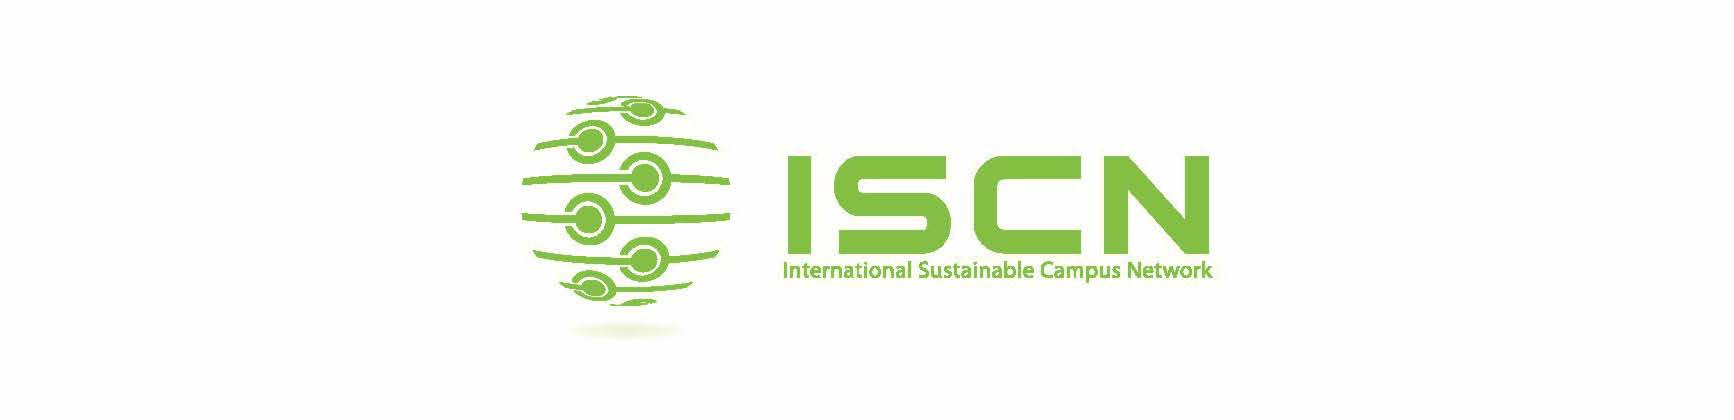 Die Universität Bonn ist seit 2021 Mitglied im internationalen Nachhaltigkeitsnetzwerk ISCN